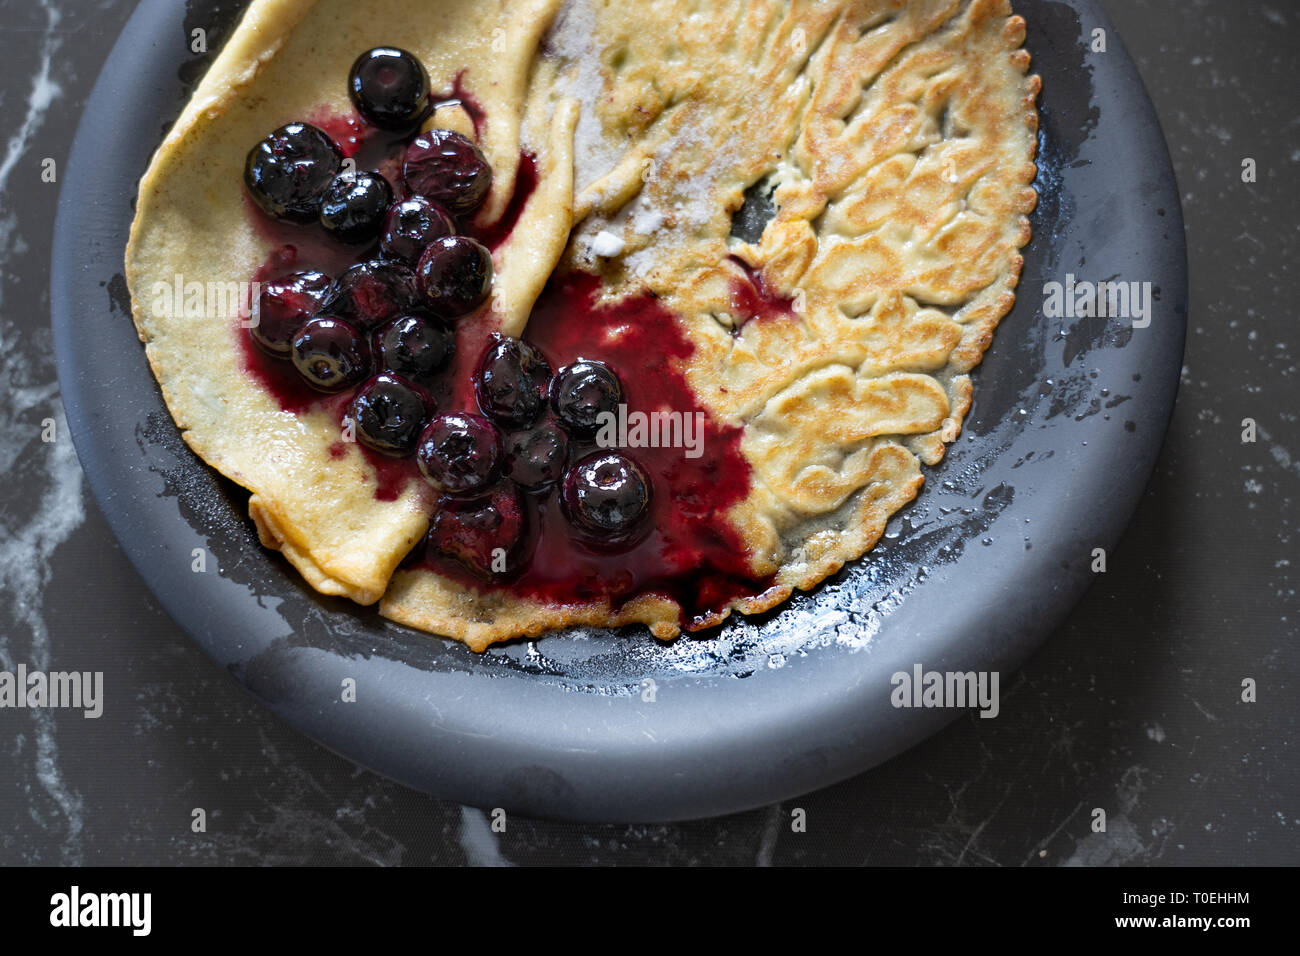 La salsa di mirtilli su una crêpe / pancake, su una piastra nera Foto Stock